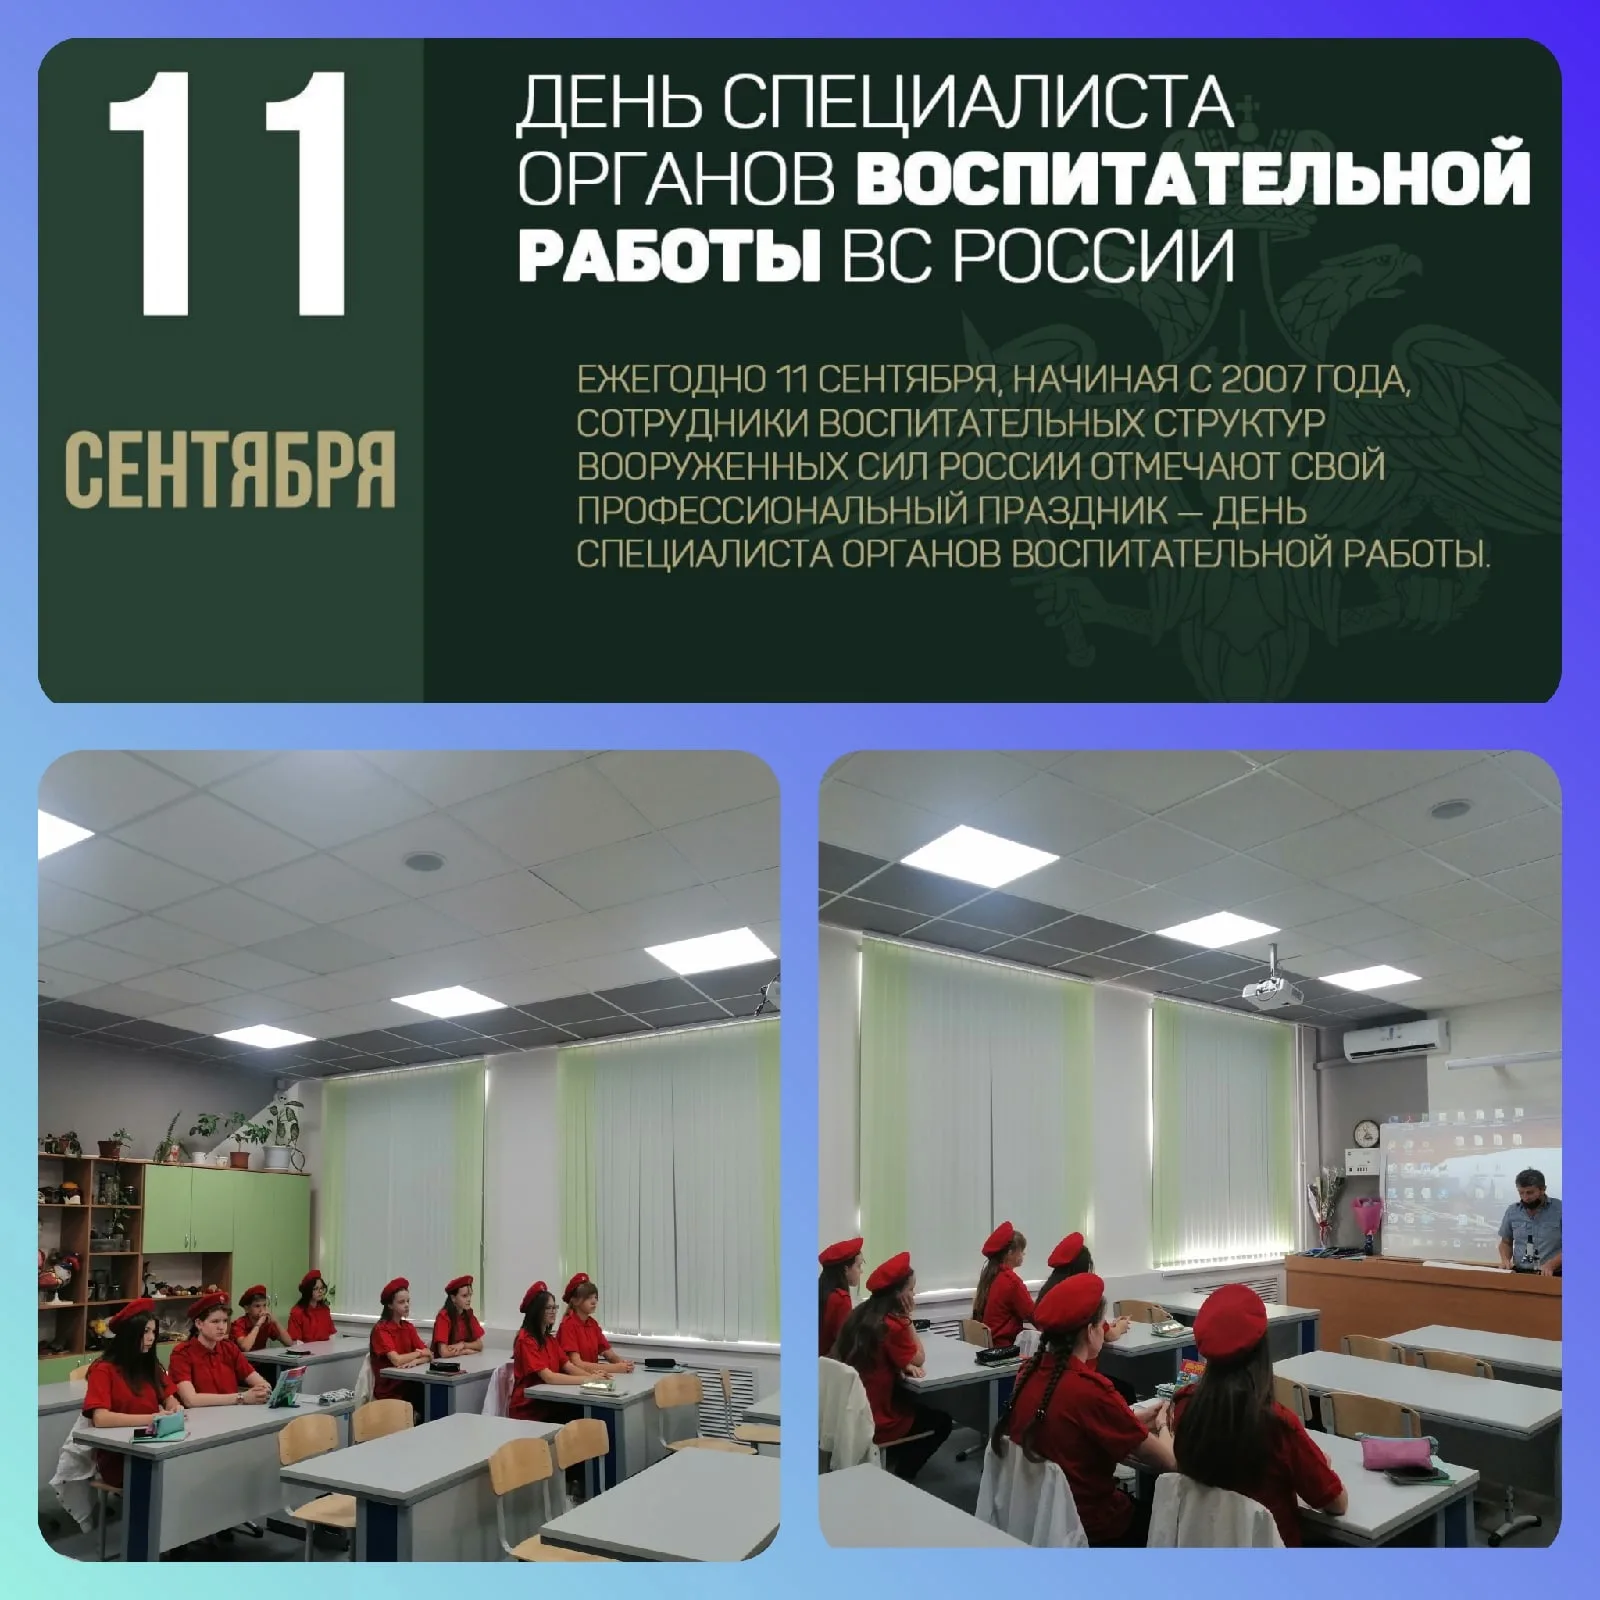 Фото Поздравления с днем специалиста органов воспитательной работы ВС России #31